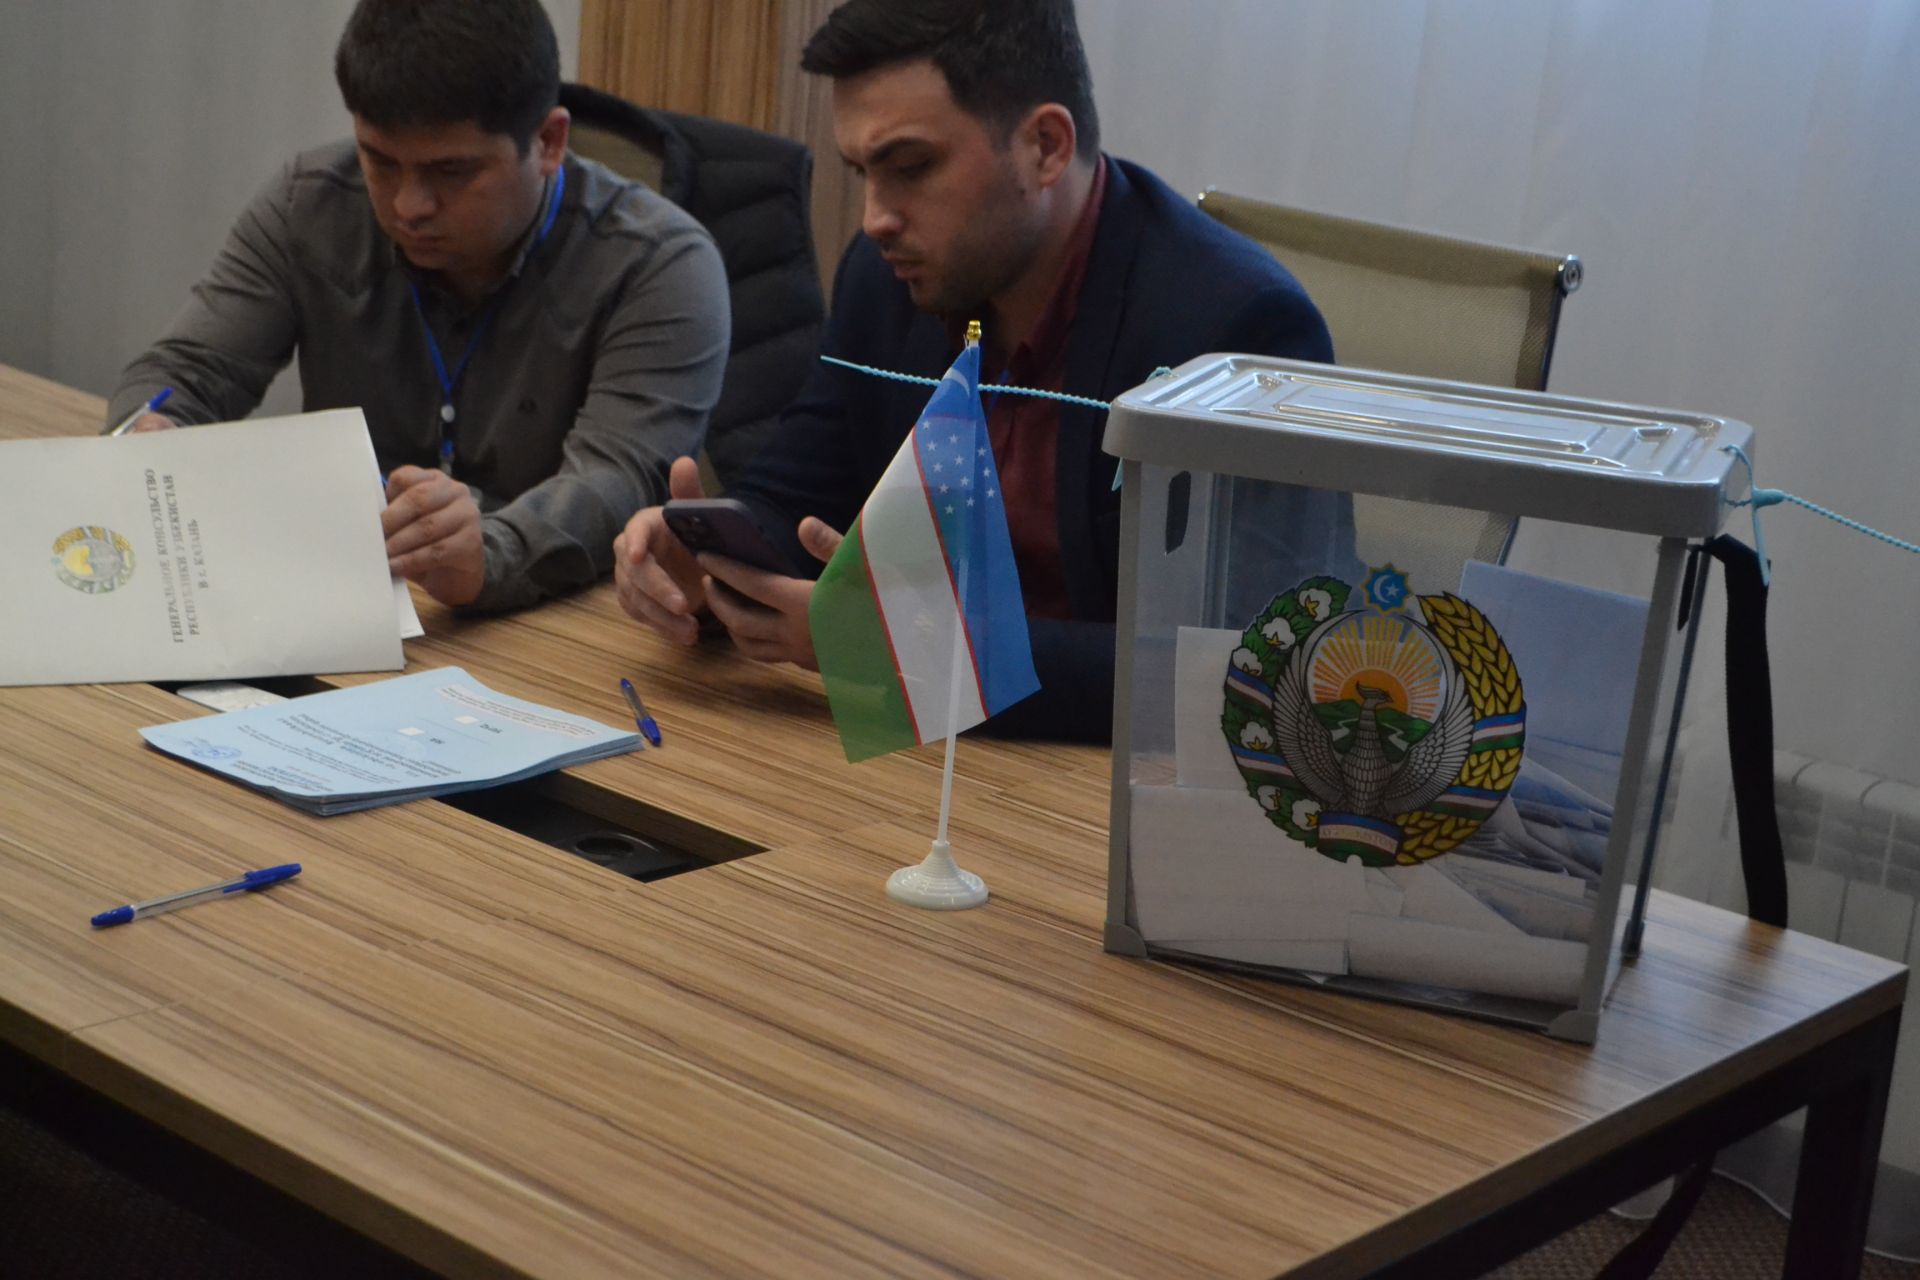 Граждане Узбекистана, проживающие в Верхнеуслонском районе, участвуют в референдуме